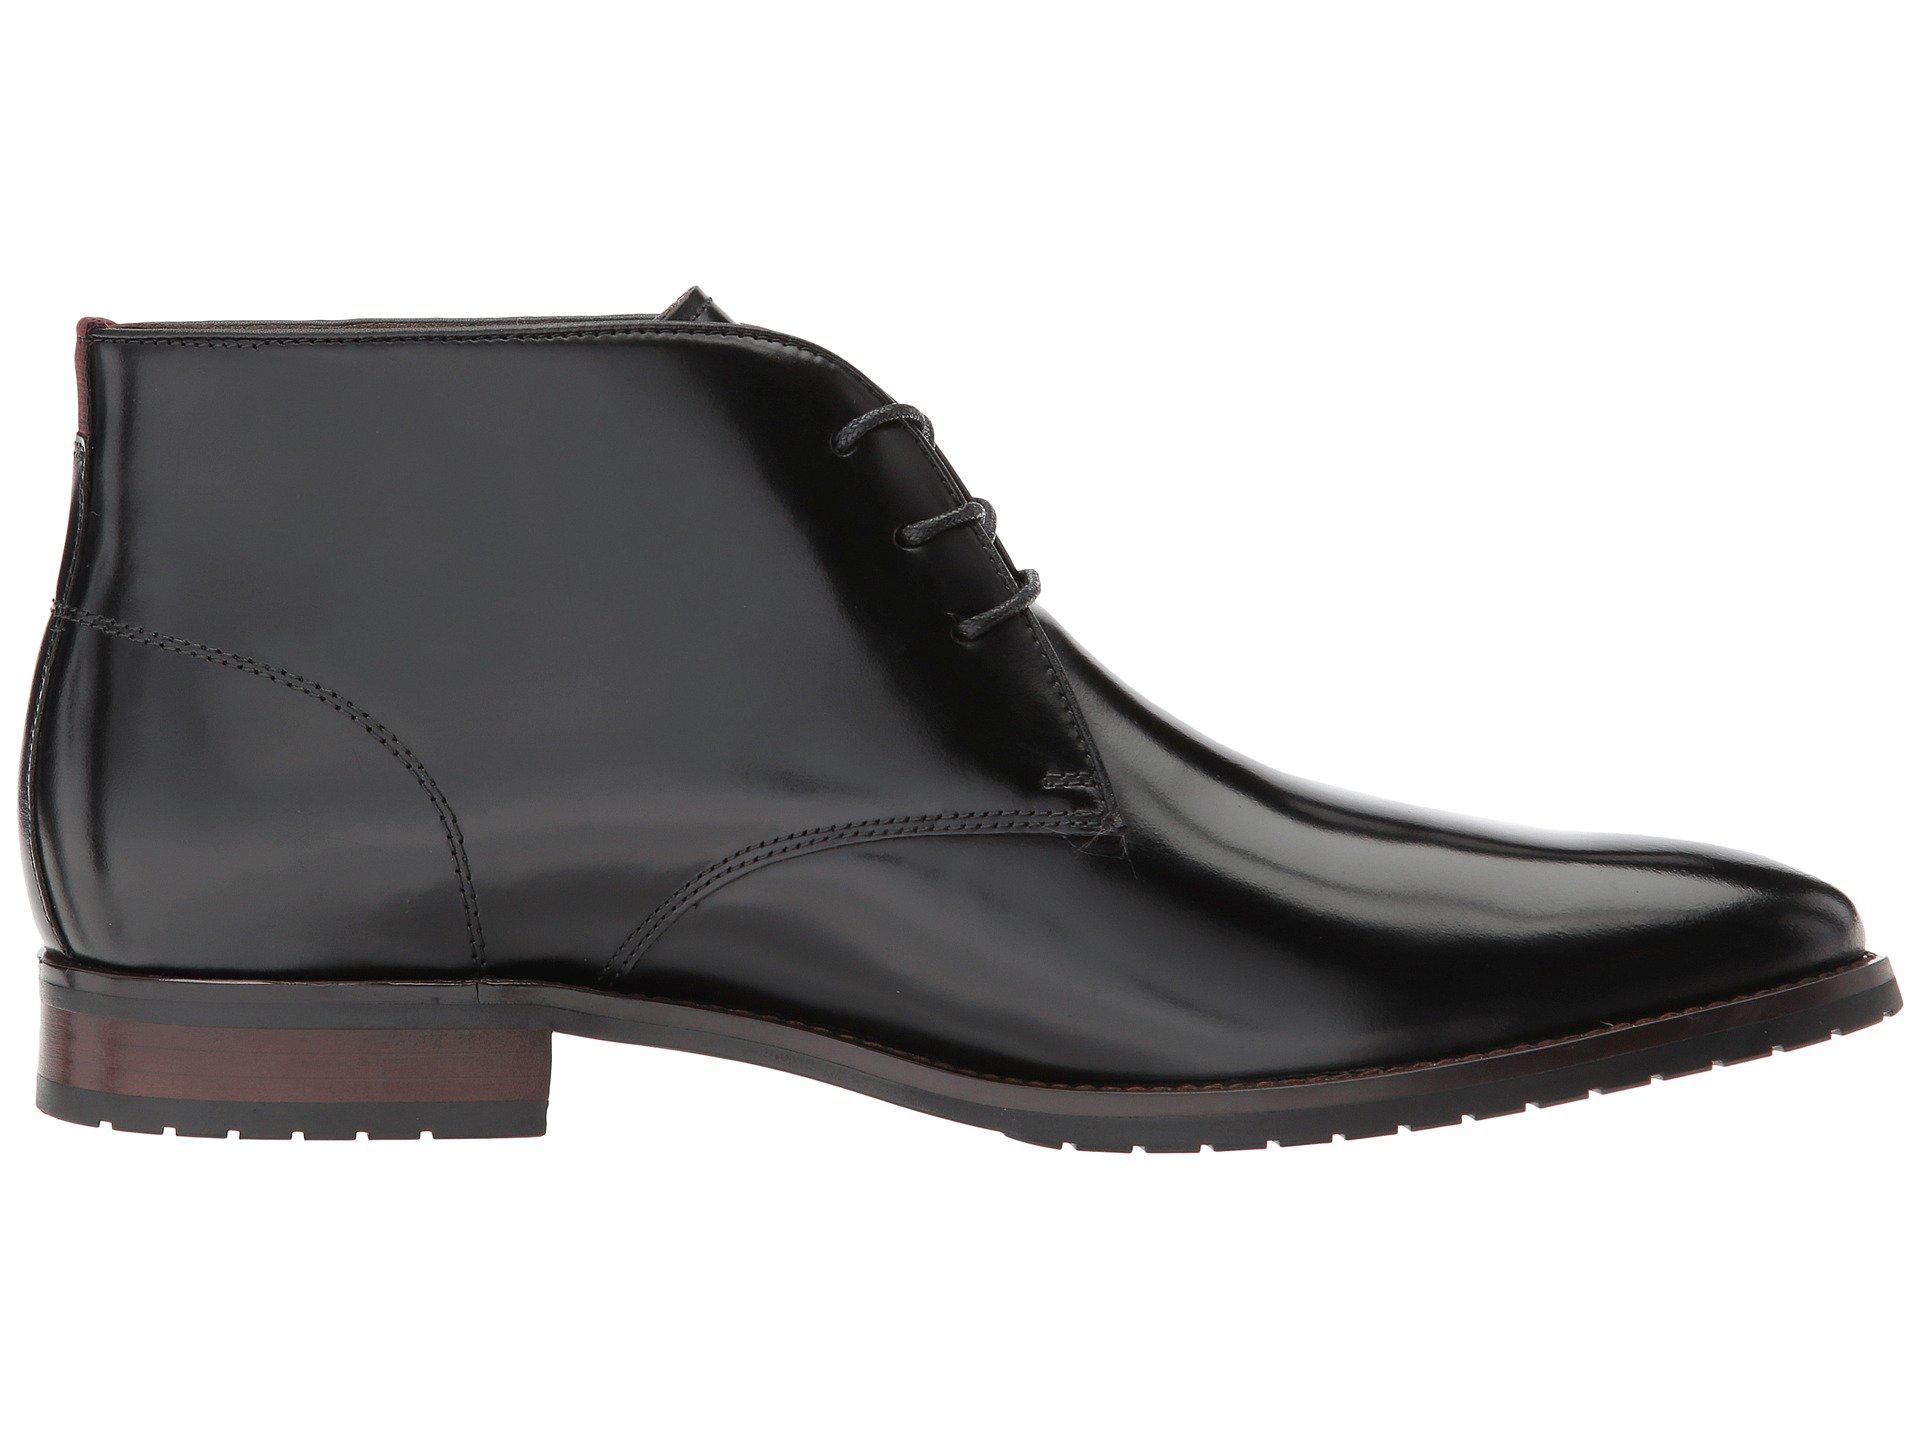 ALDO Leather Chiareggio in Black Leather (Black) for Men - Lyst